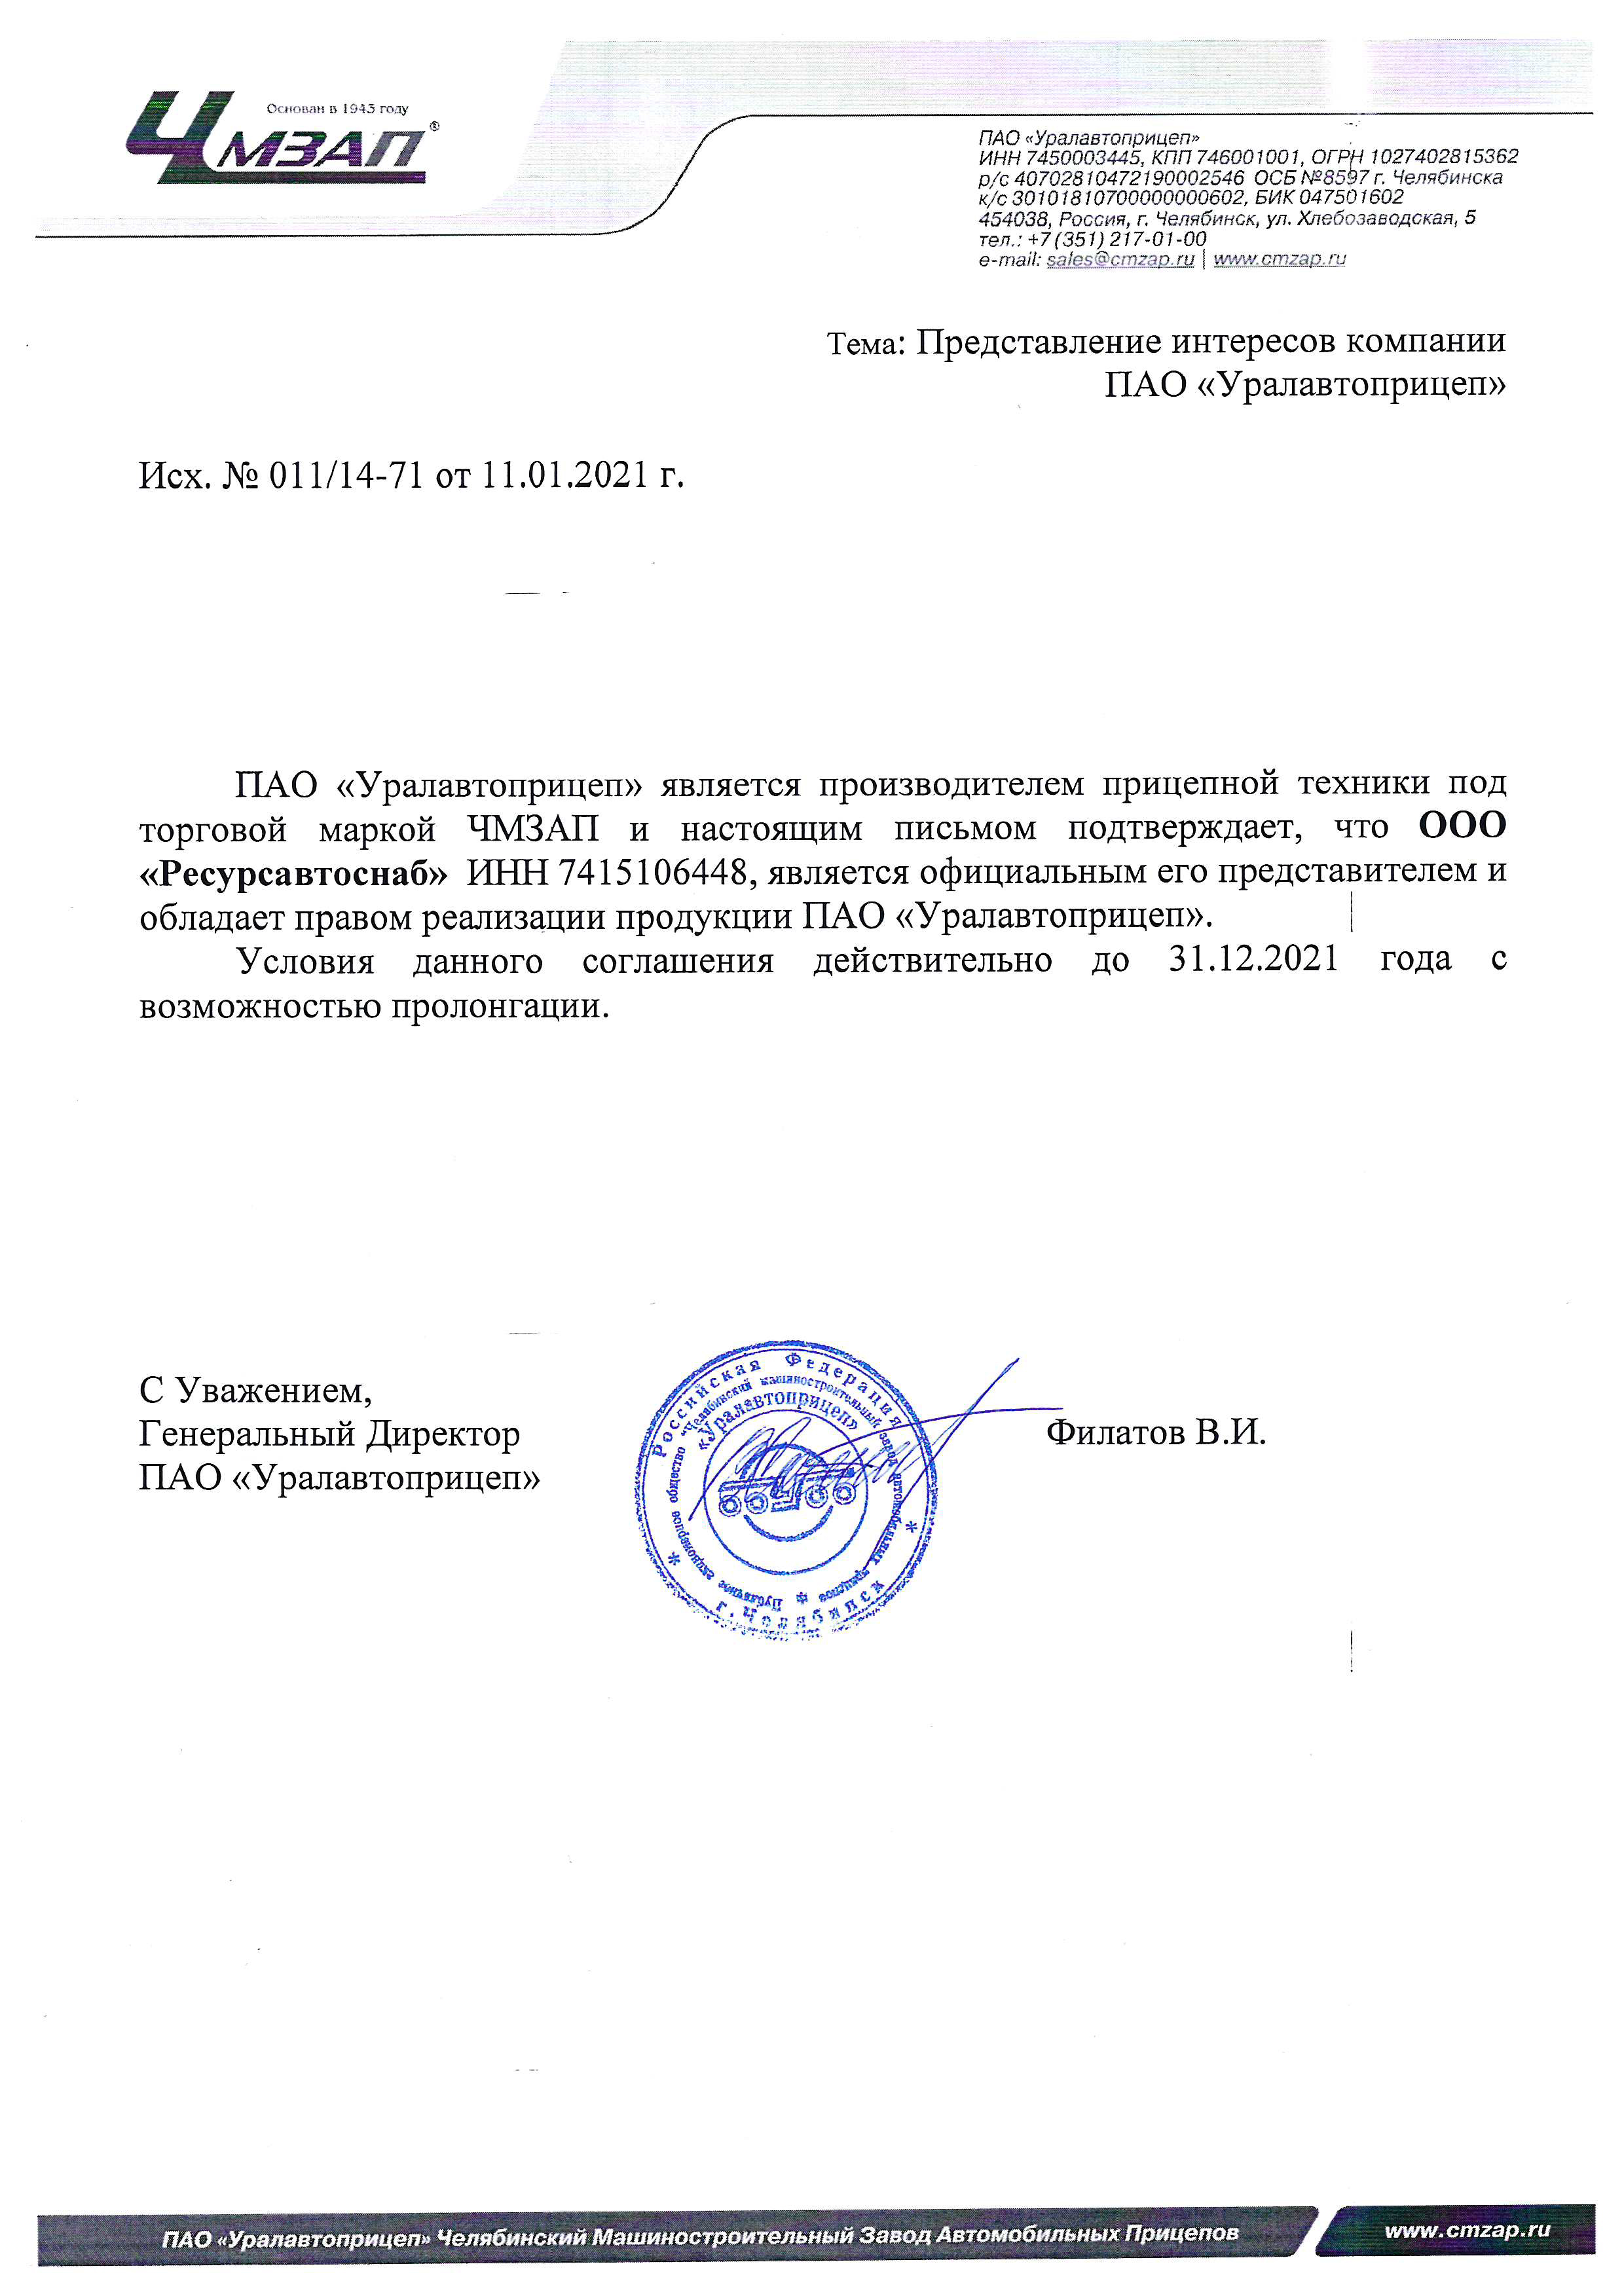 Письмо официально дилера ПАО «Уралавтоприцеп»